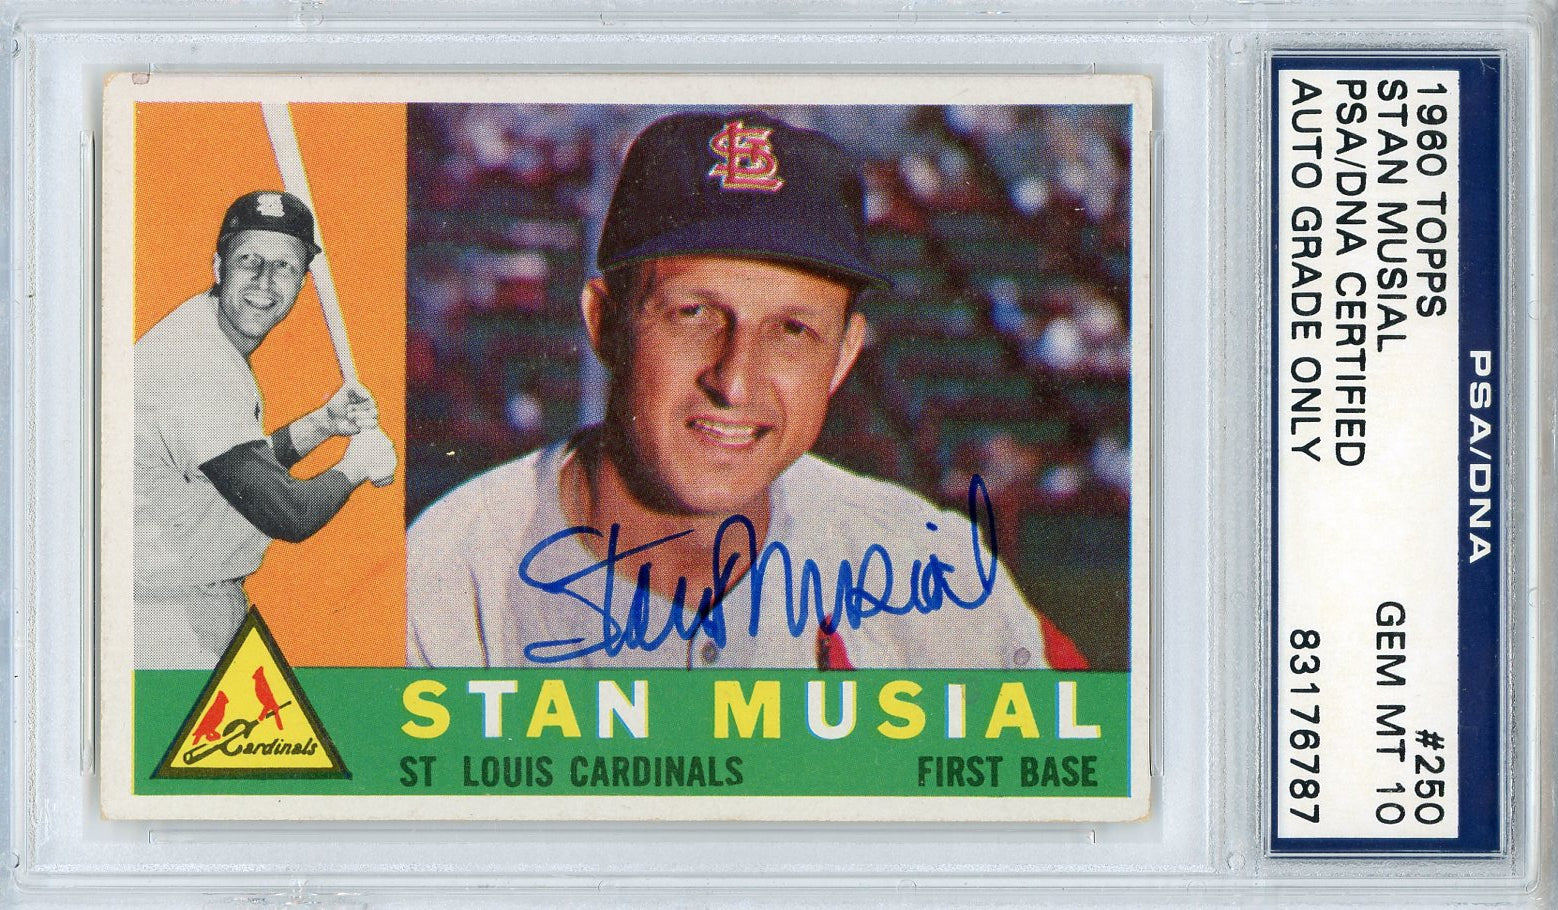 1960 Topps Regular (Baseball) Card# 250 Stan Musial of the St